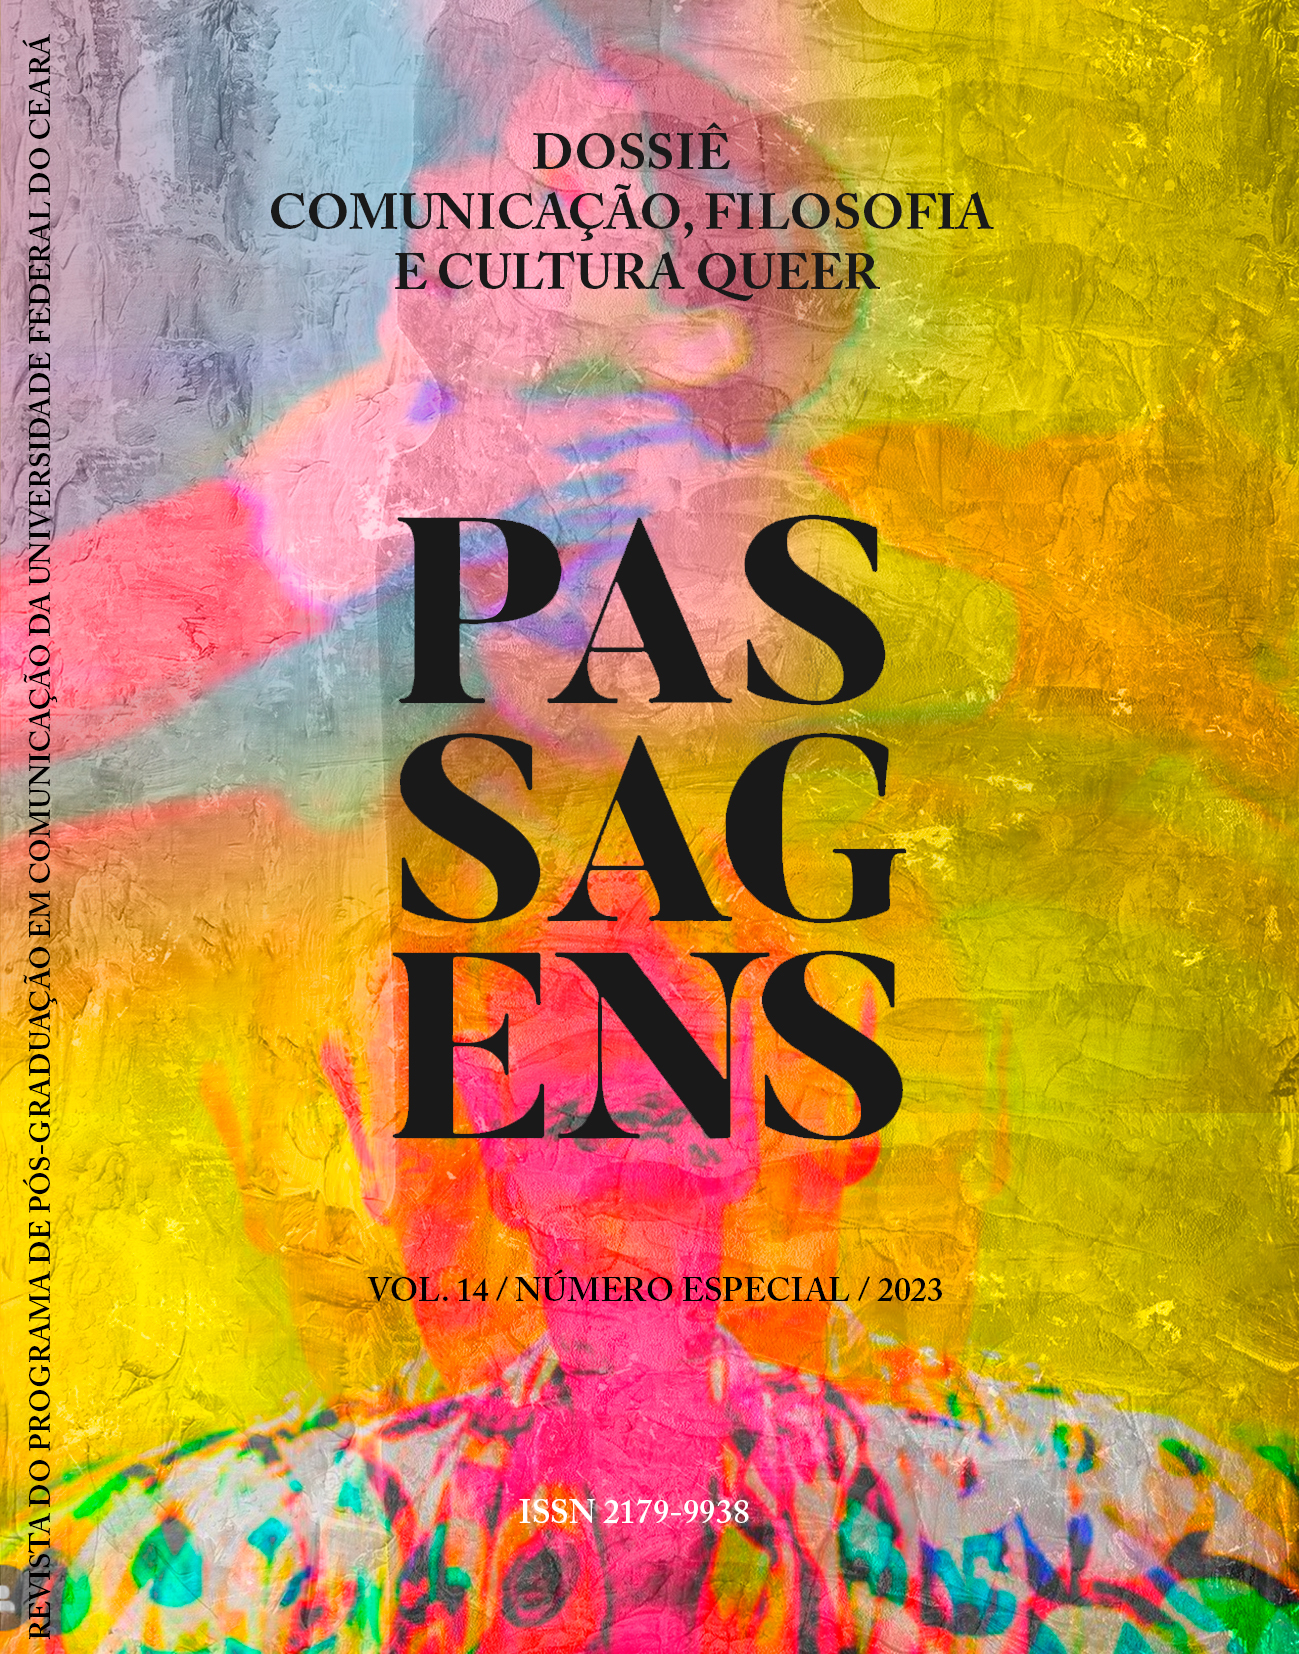 					Afficher Vol. 14 No esp (2023): Dossiê Comunicação, Filosofia e Cultura Queer
				